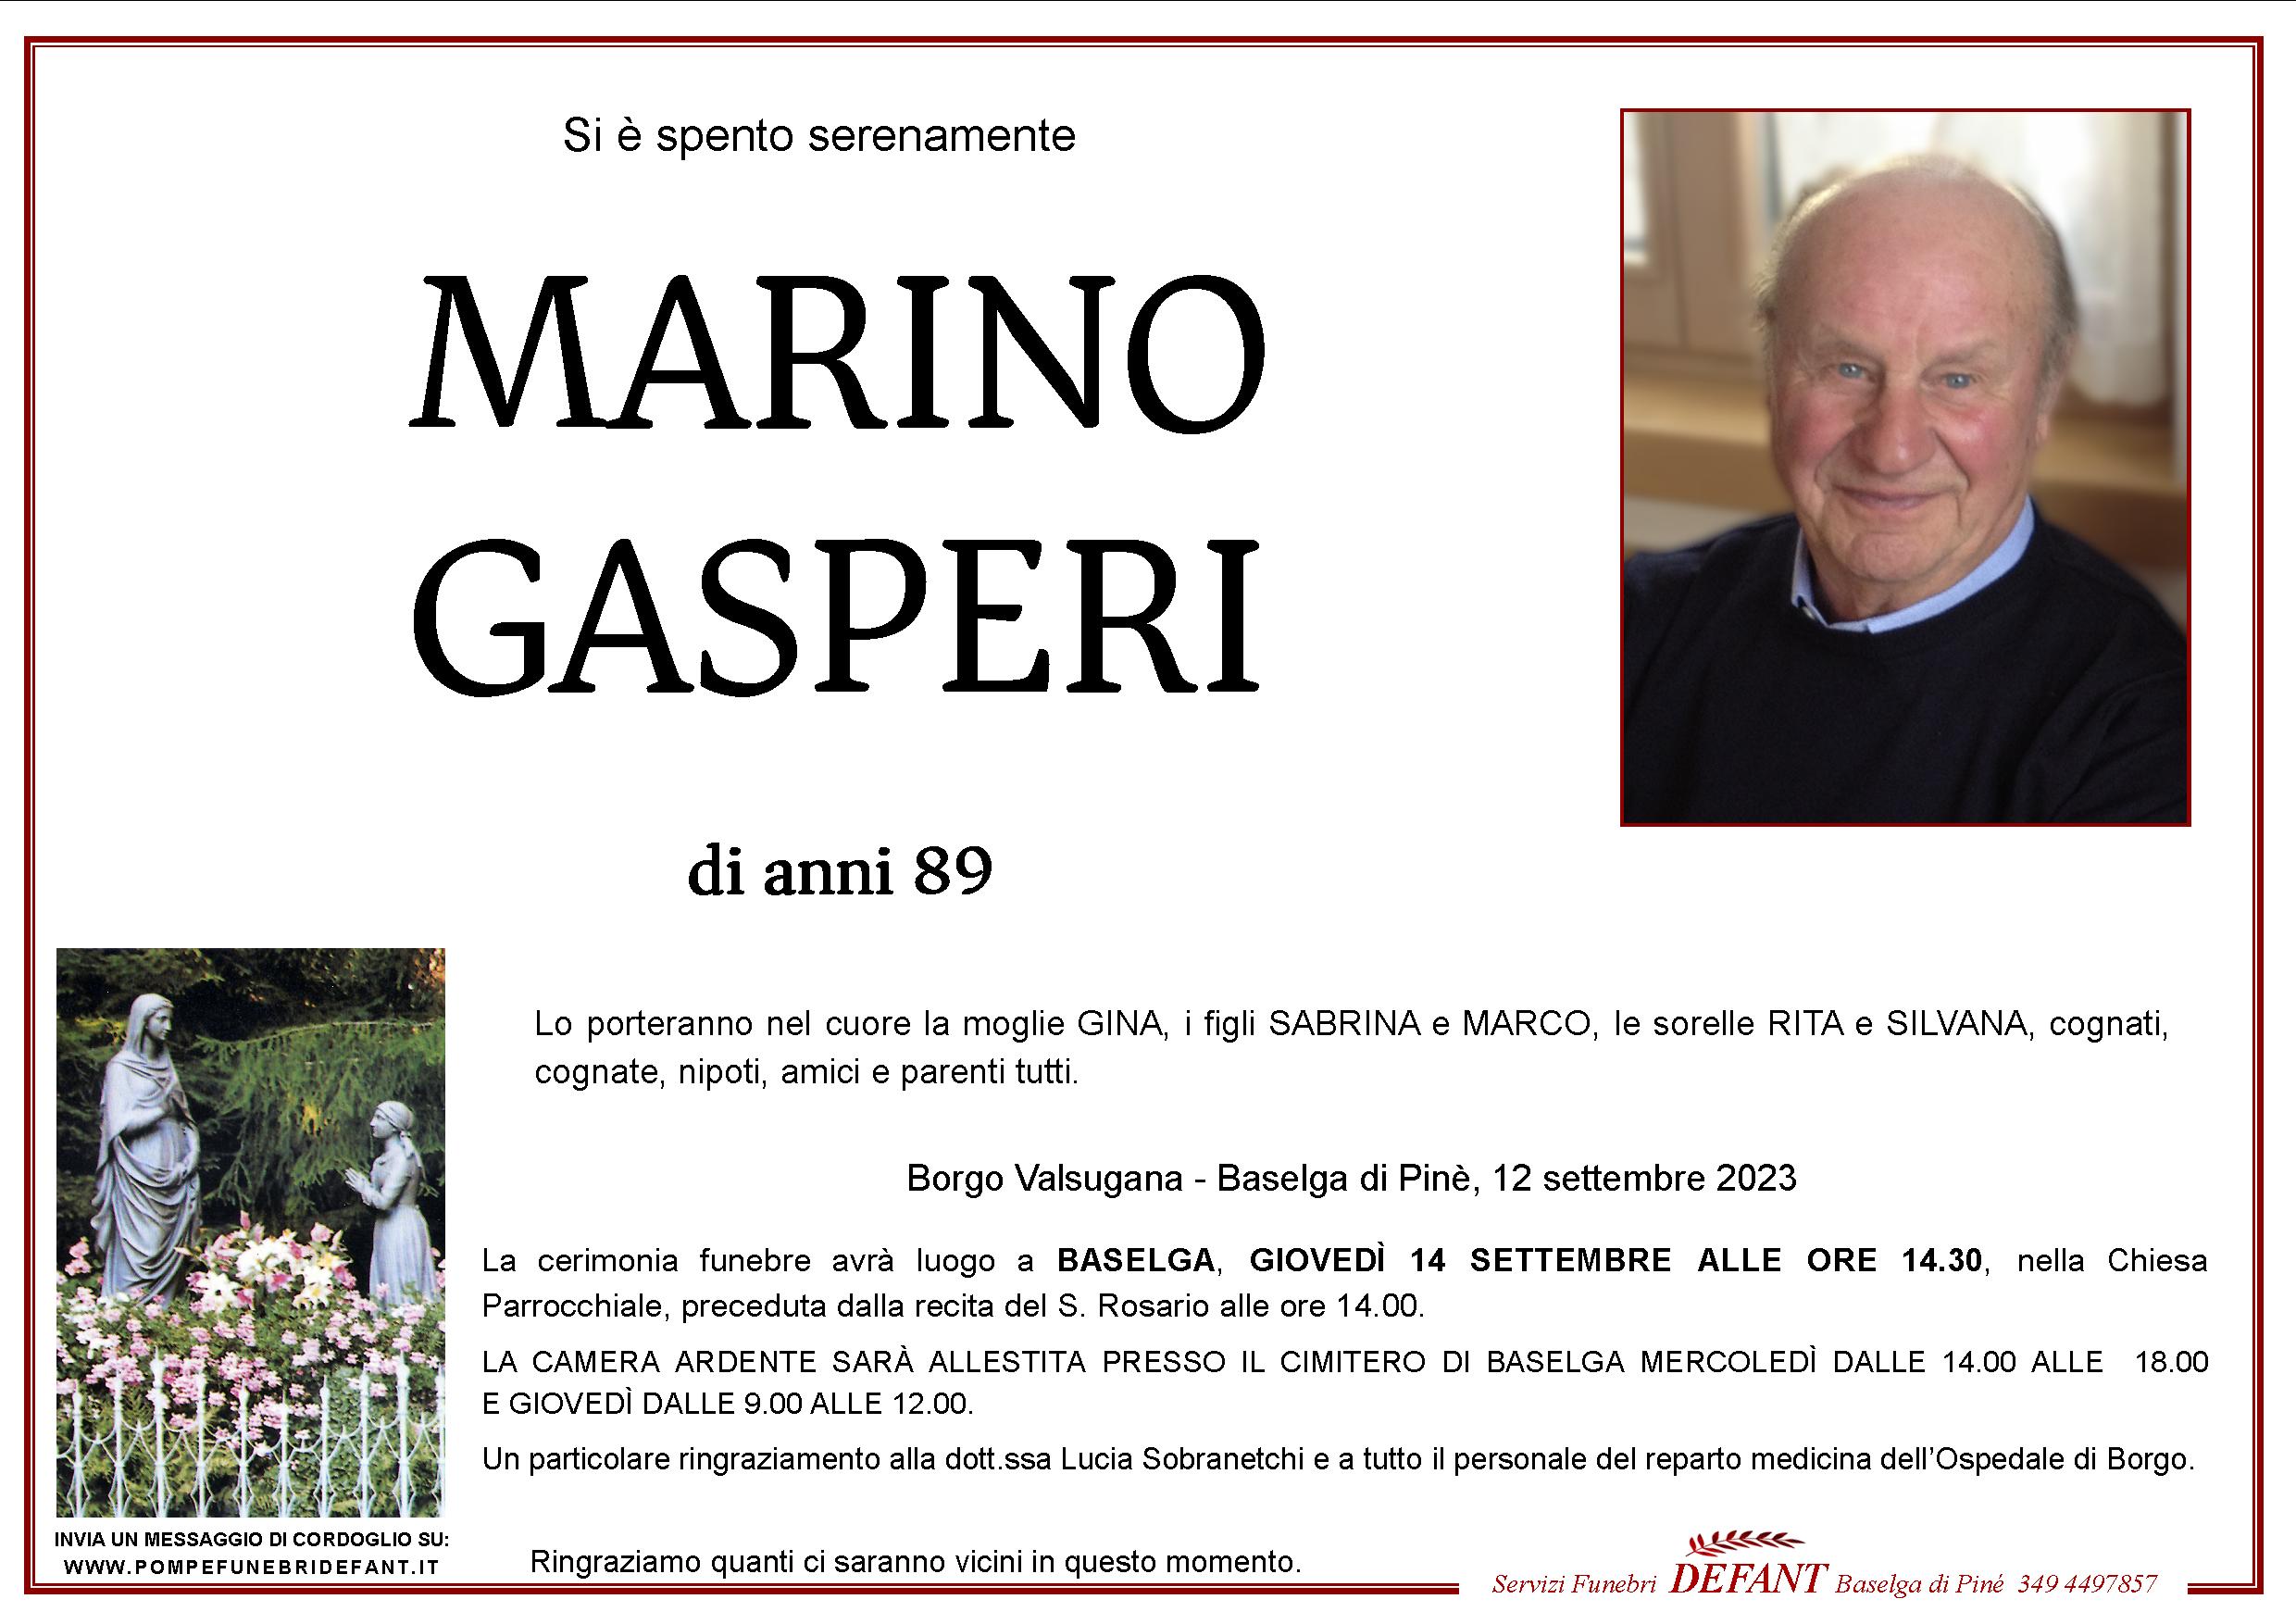 Marino Gasperi